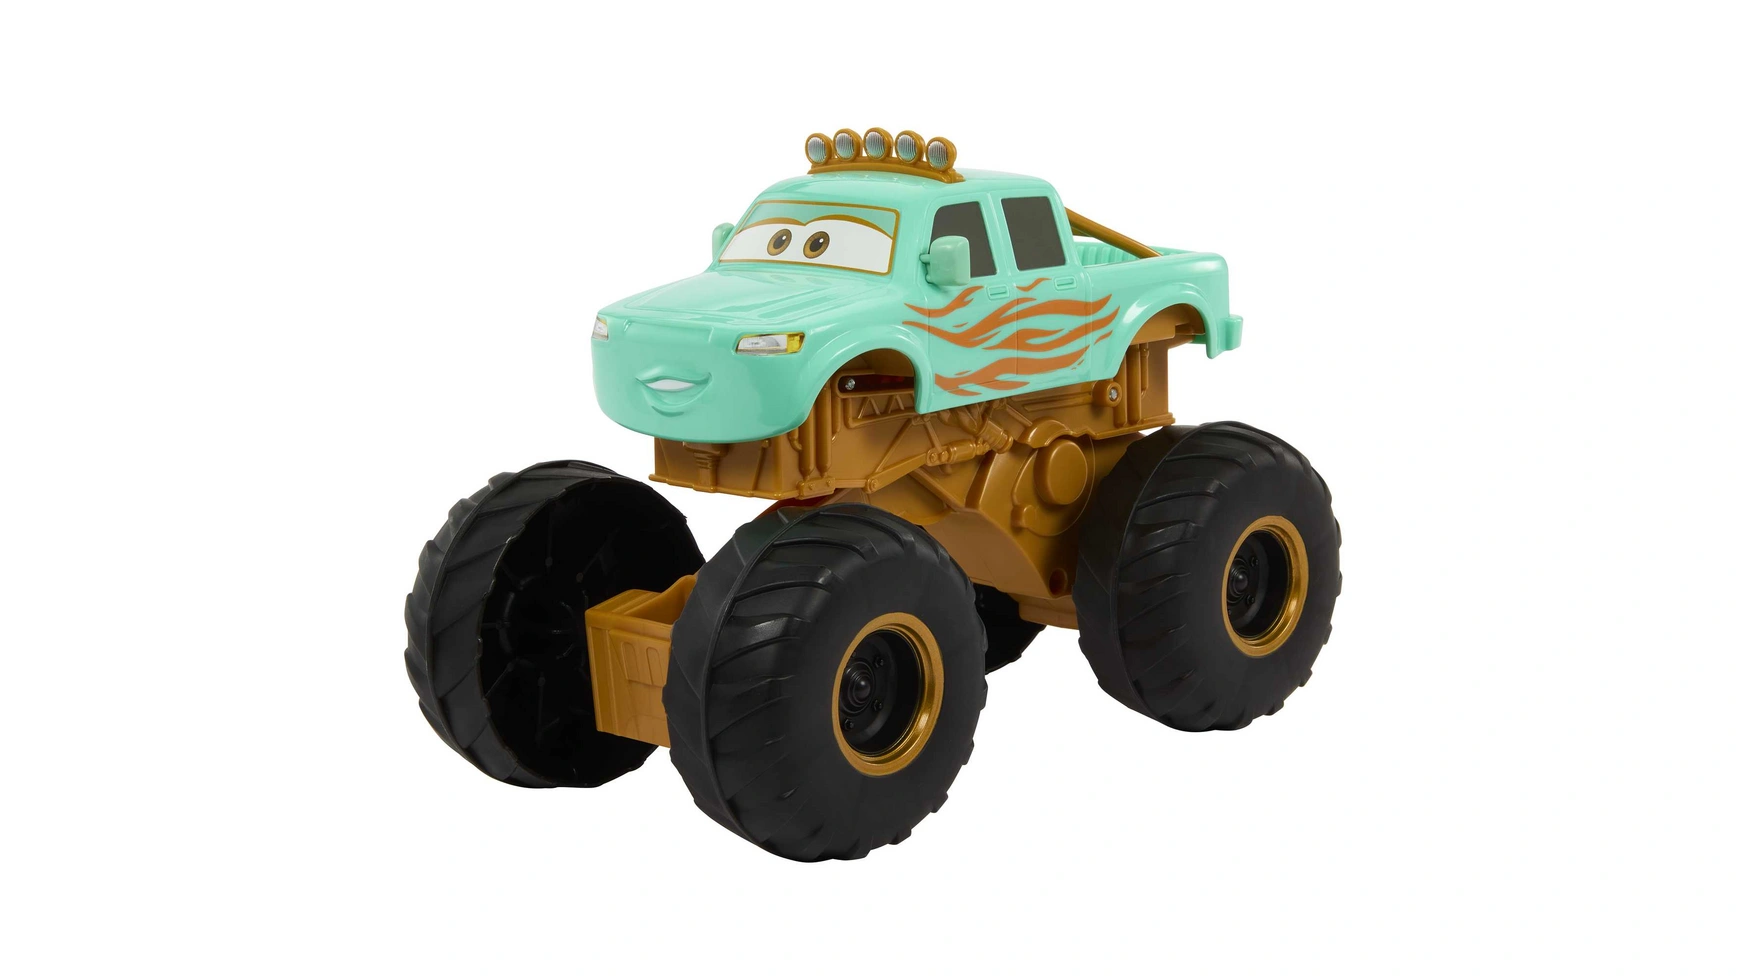 Disney Pixar Cars Hero с участием Айви Mattel Disney Cars Fahrzeuge набор литых автомобилей с персонажами disney pixar cars 1 шт в ассортименте mattel disney cars fahrzeuge